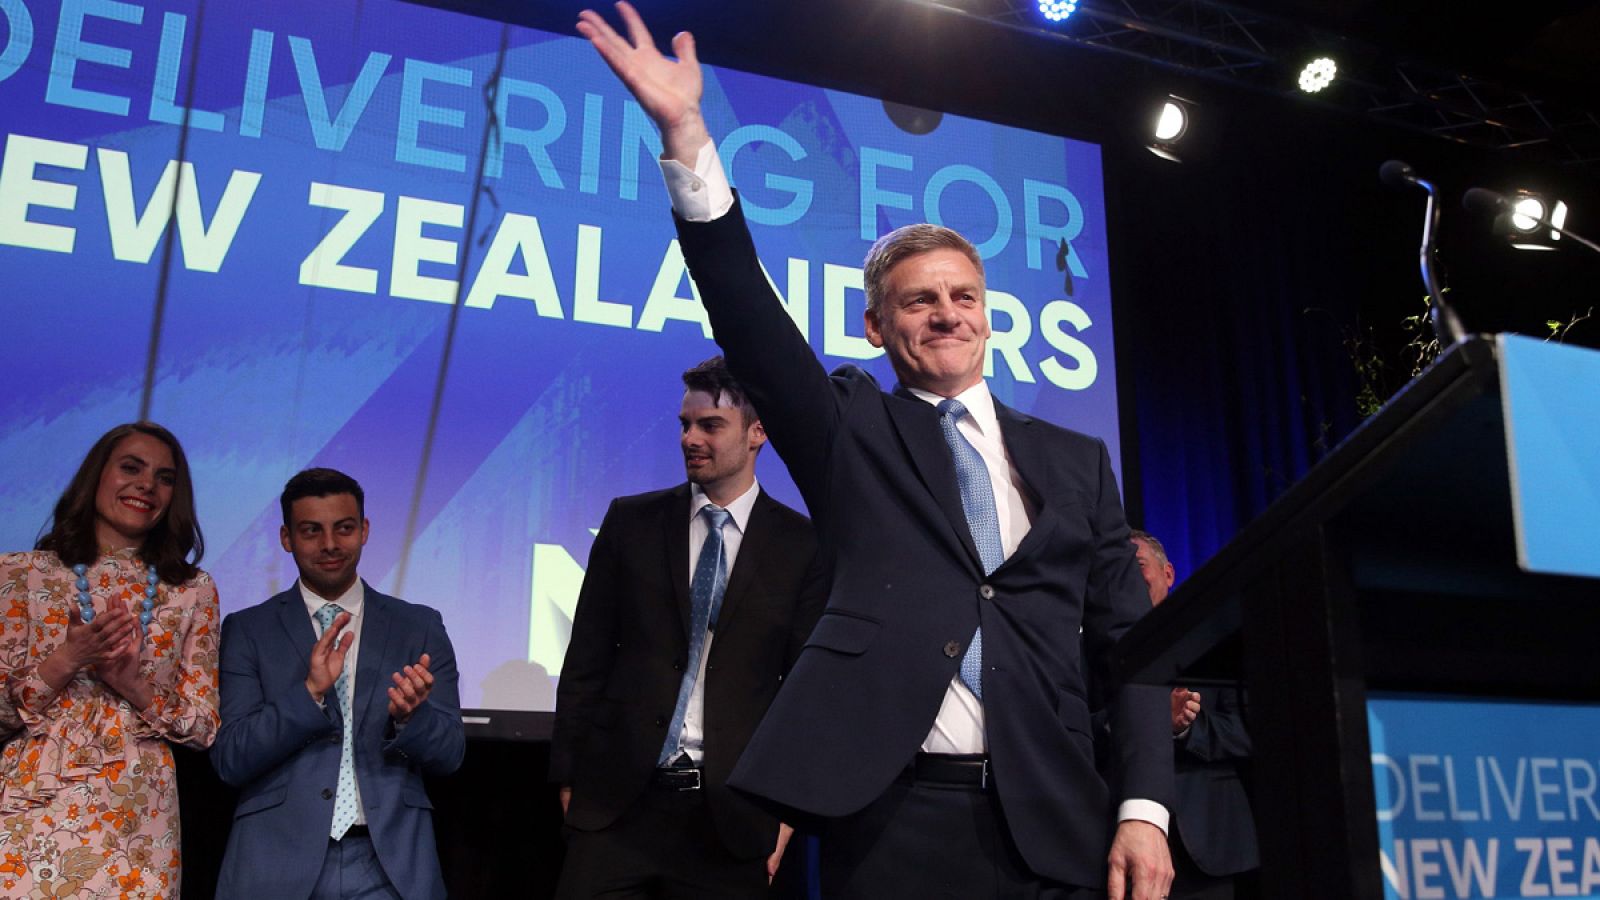 El primer ministro de Nueva Zelanda, Bill English, celebra su victoria en las elecciones en el Centro de Convenciones de Auckland